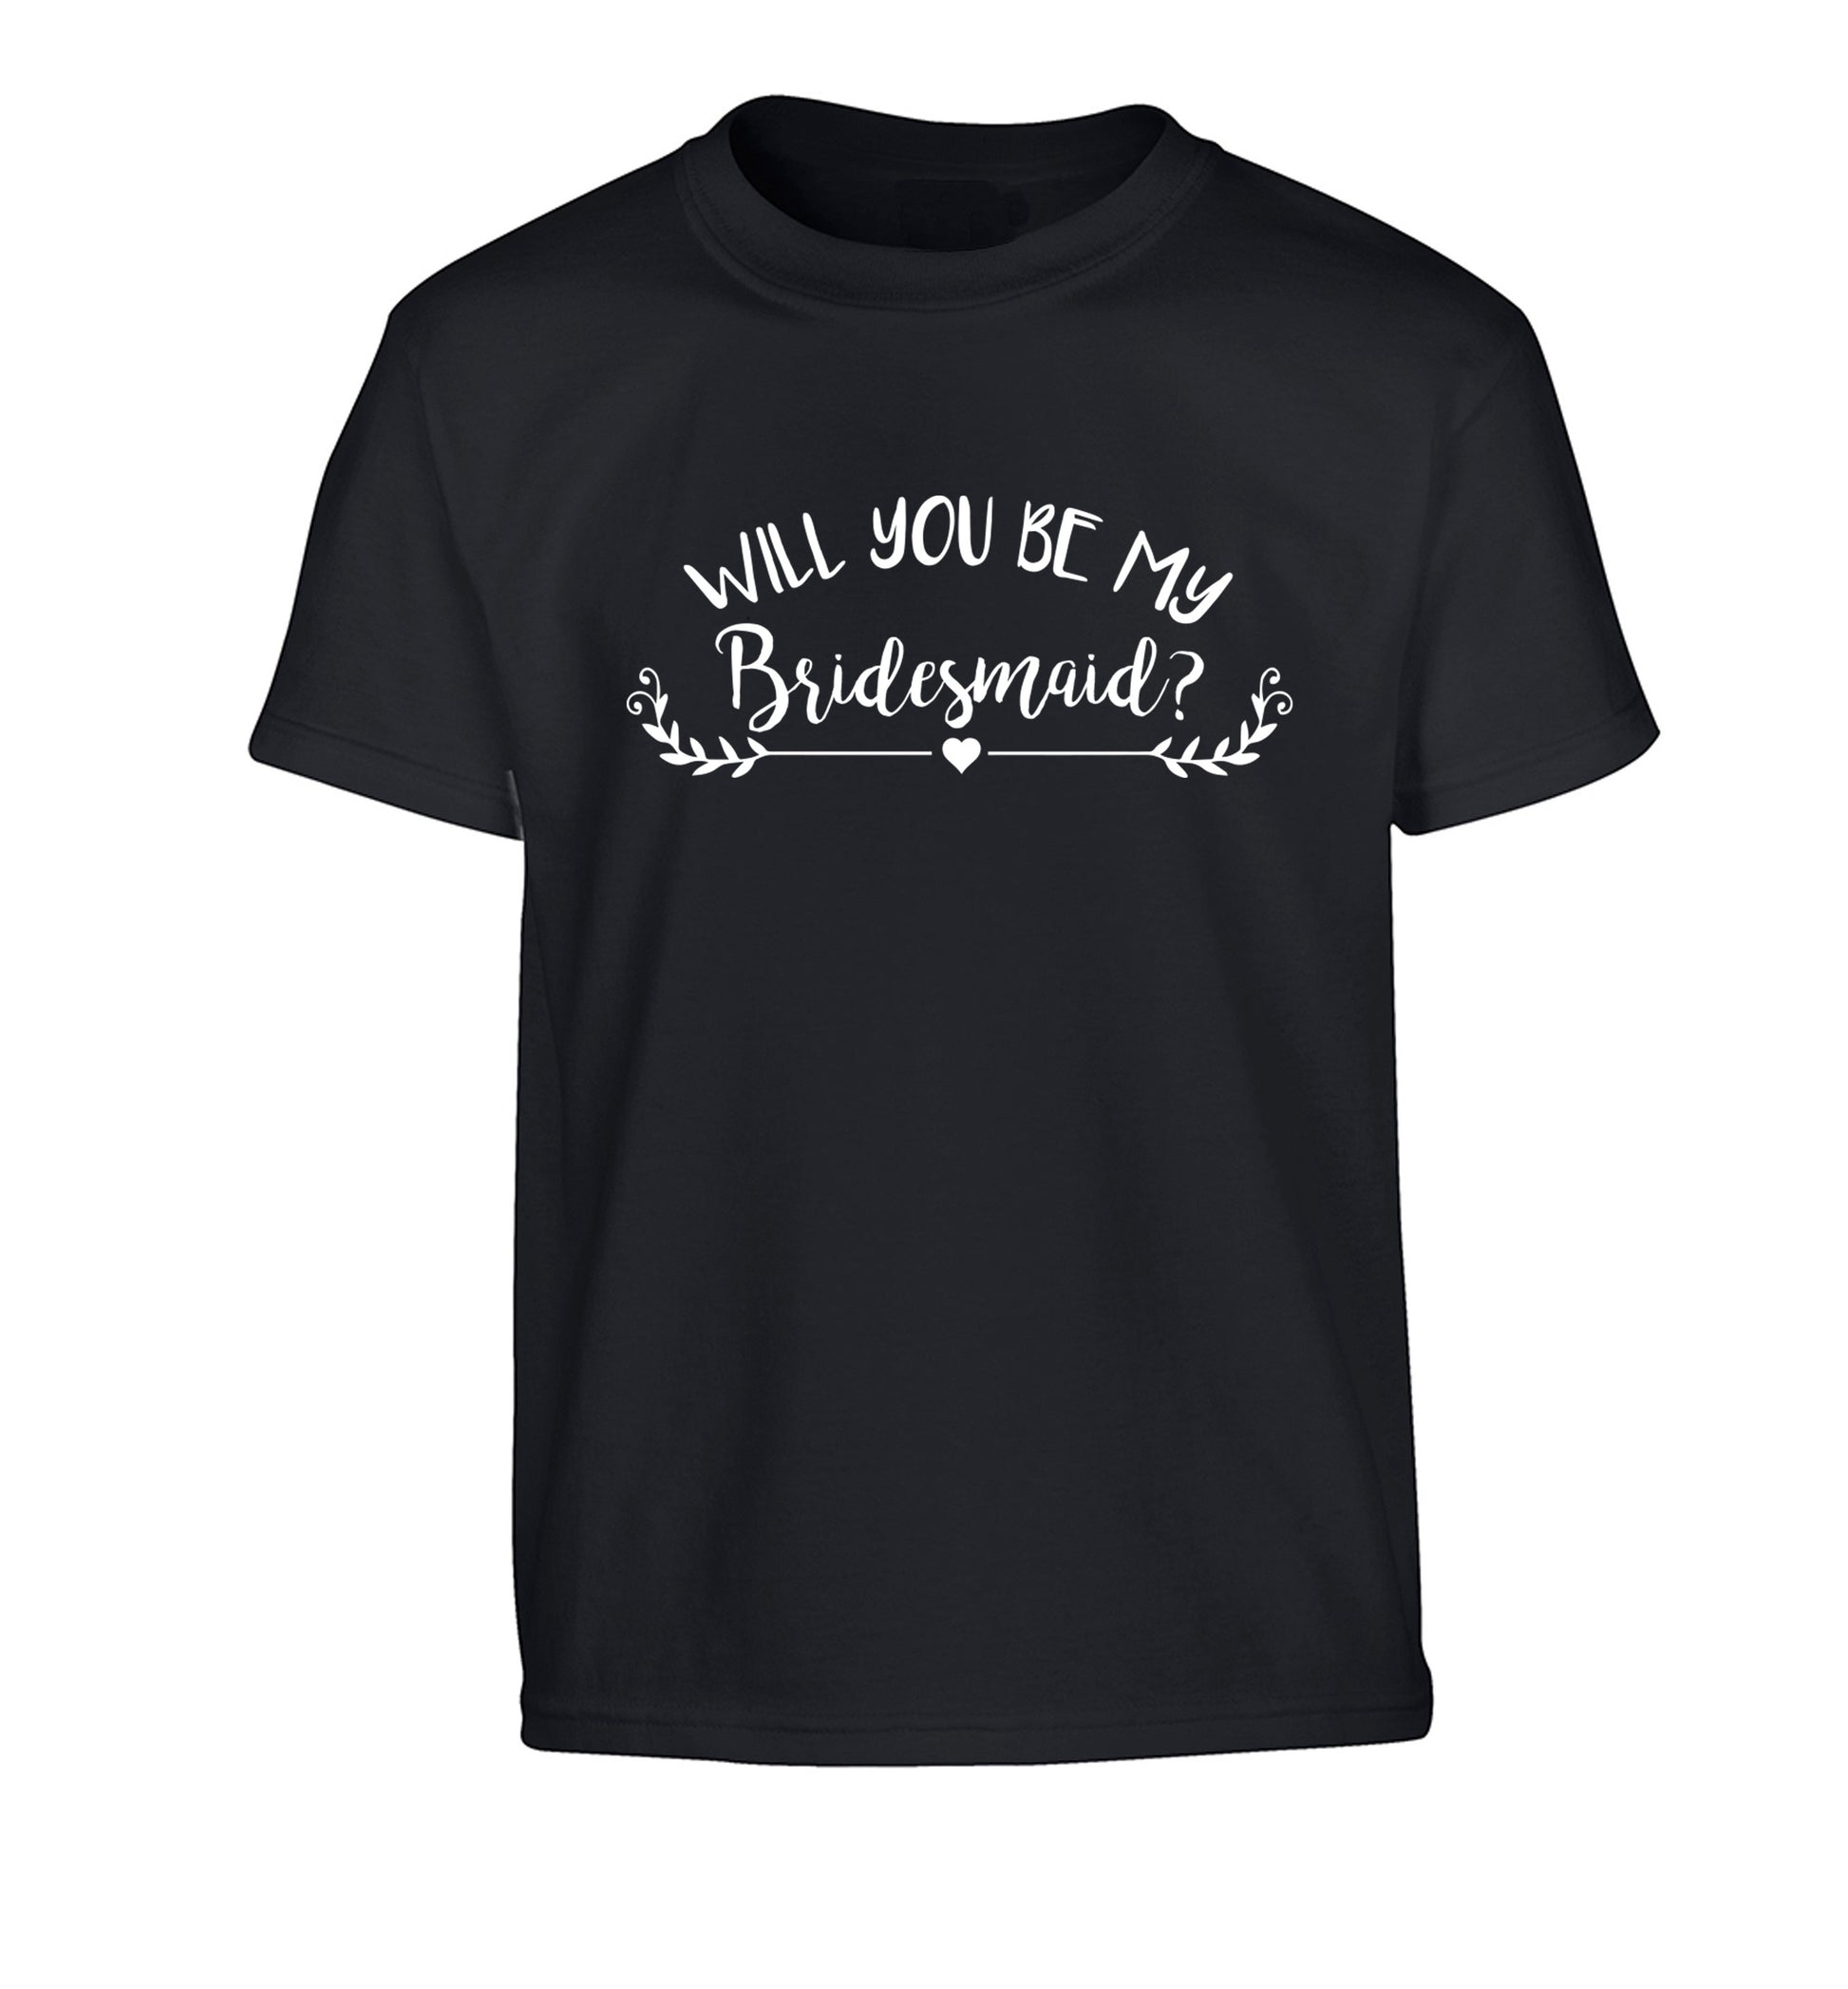 Will you be my bridesmaid? Children's black Tshirt 12-14 Years